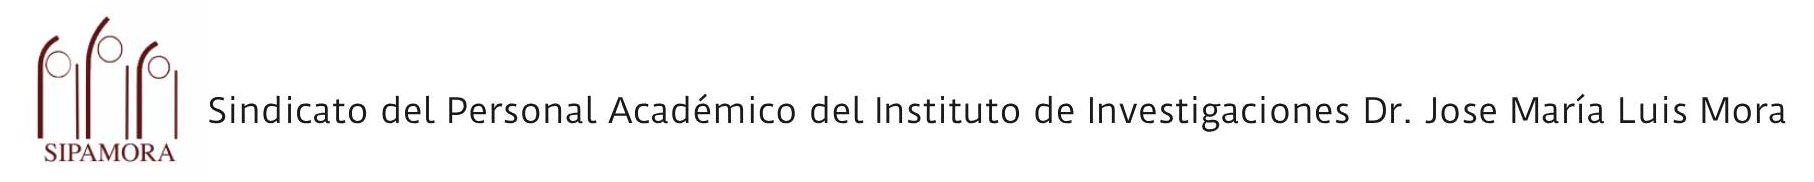 Sindicato del Personal Académico del Instituto de Investigaciones Dr. José María Luis Mora